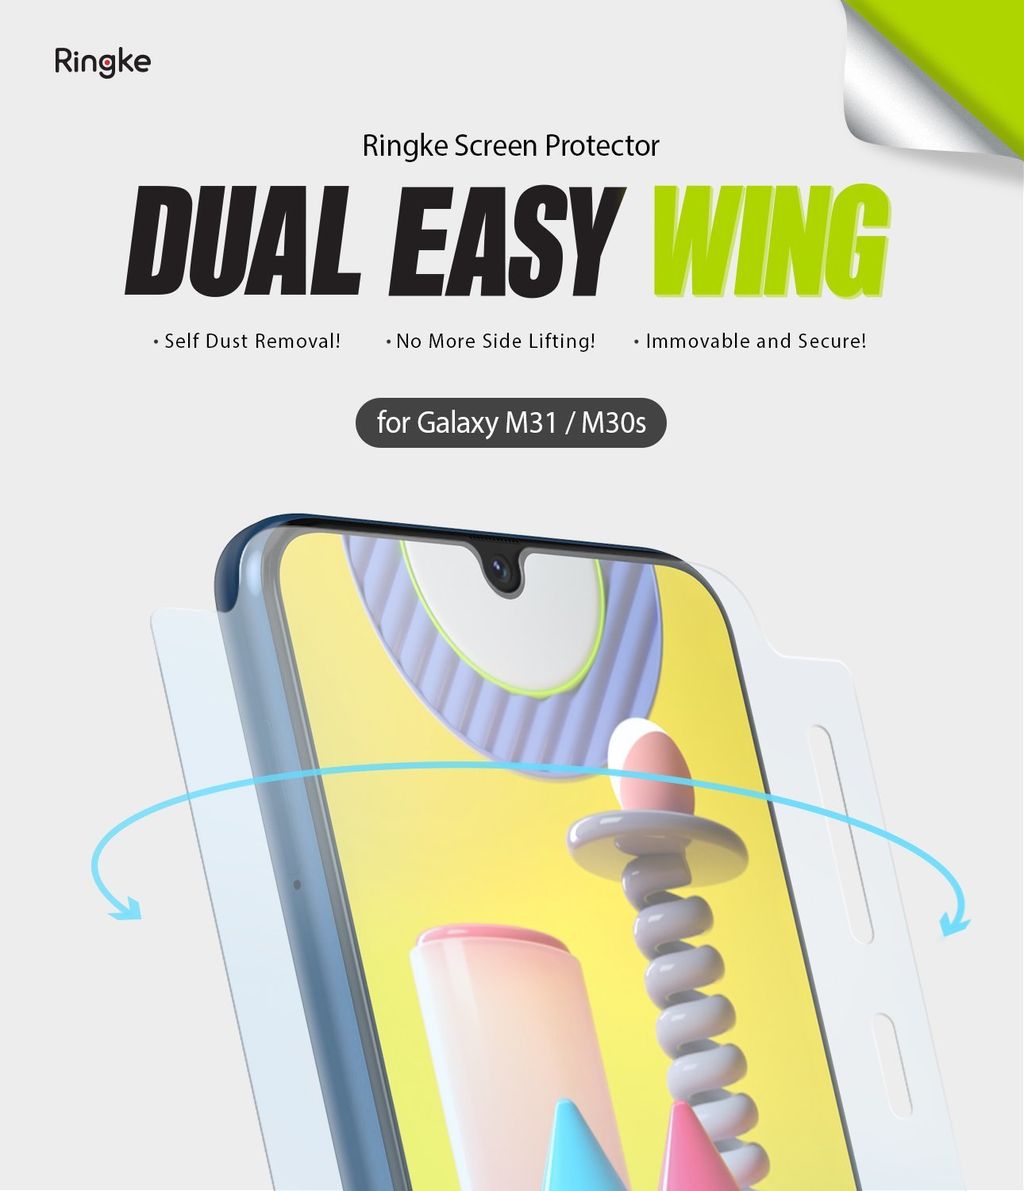 Ringke_Dual_Easy_Wing_Galaxy_M31_M30s_sub_thum_main_2048x.jpg